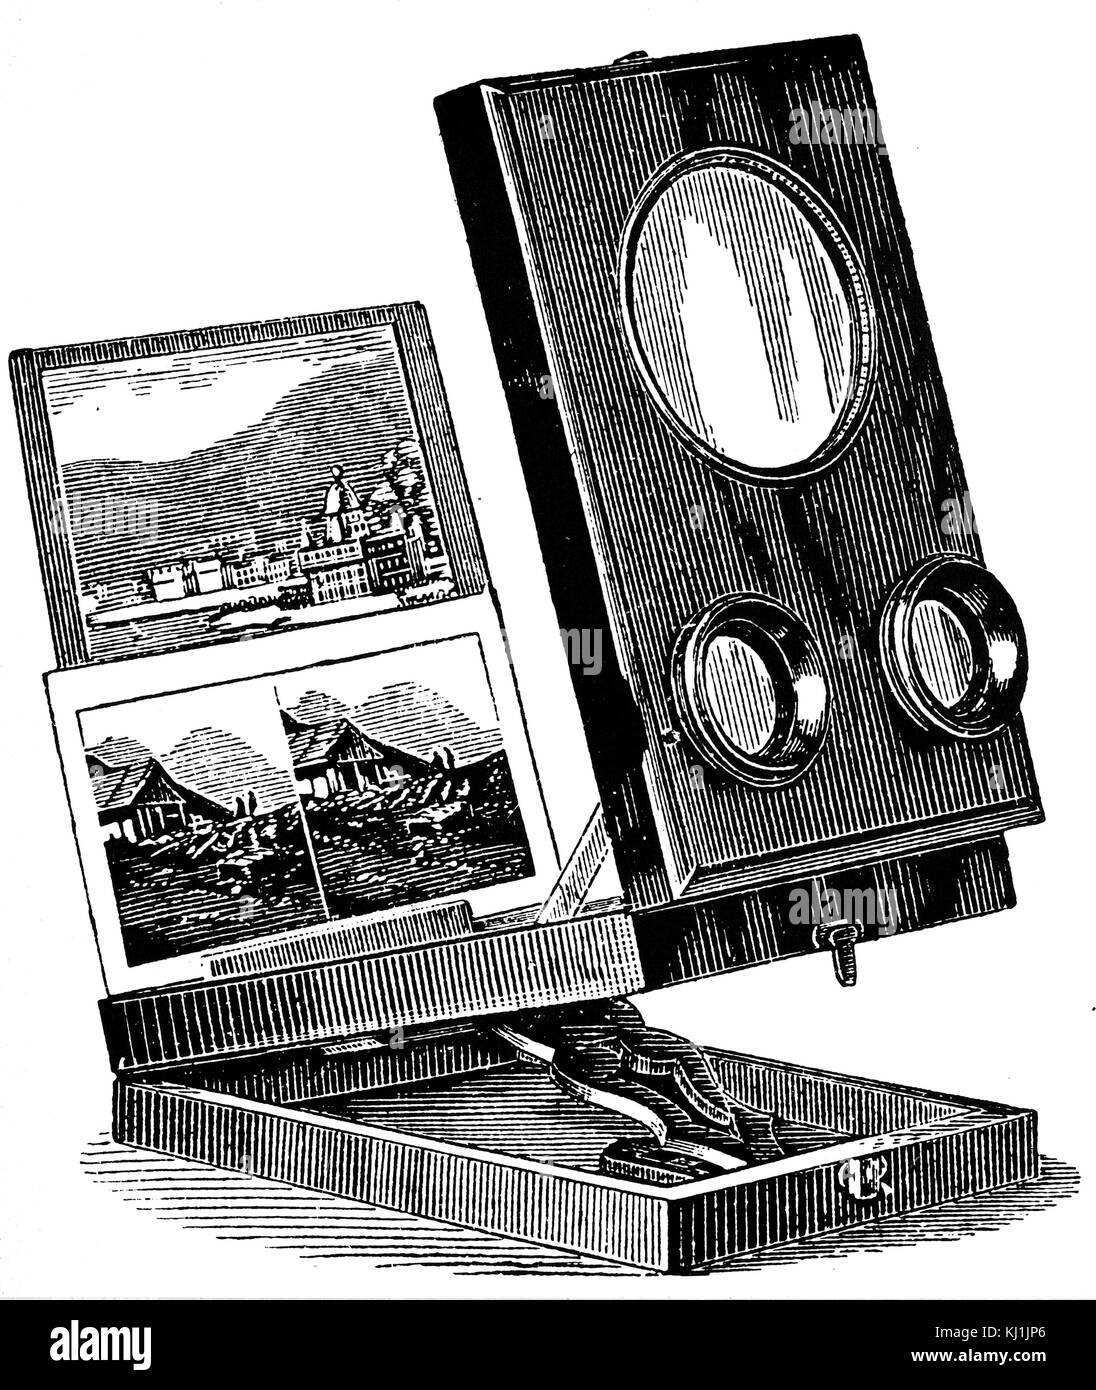 Grabado representando un plegable refracte estereoscopio con imagen de descanso. Fecha del siglo XIX Foto de stock